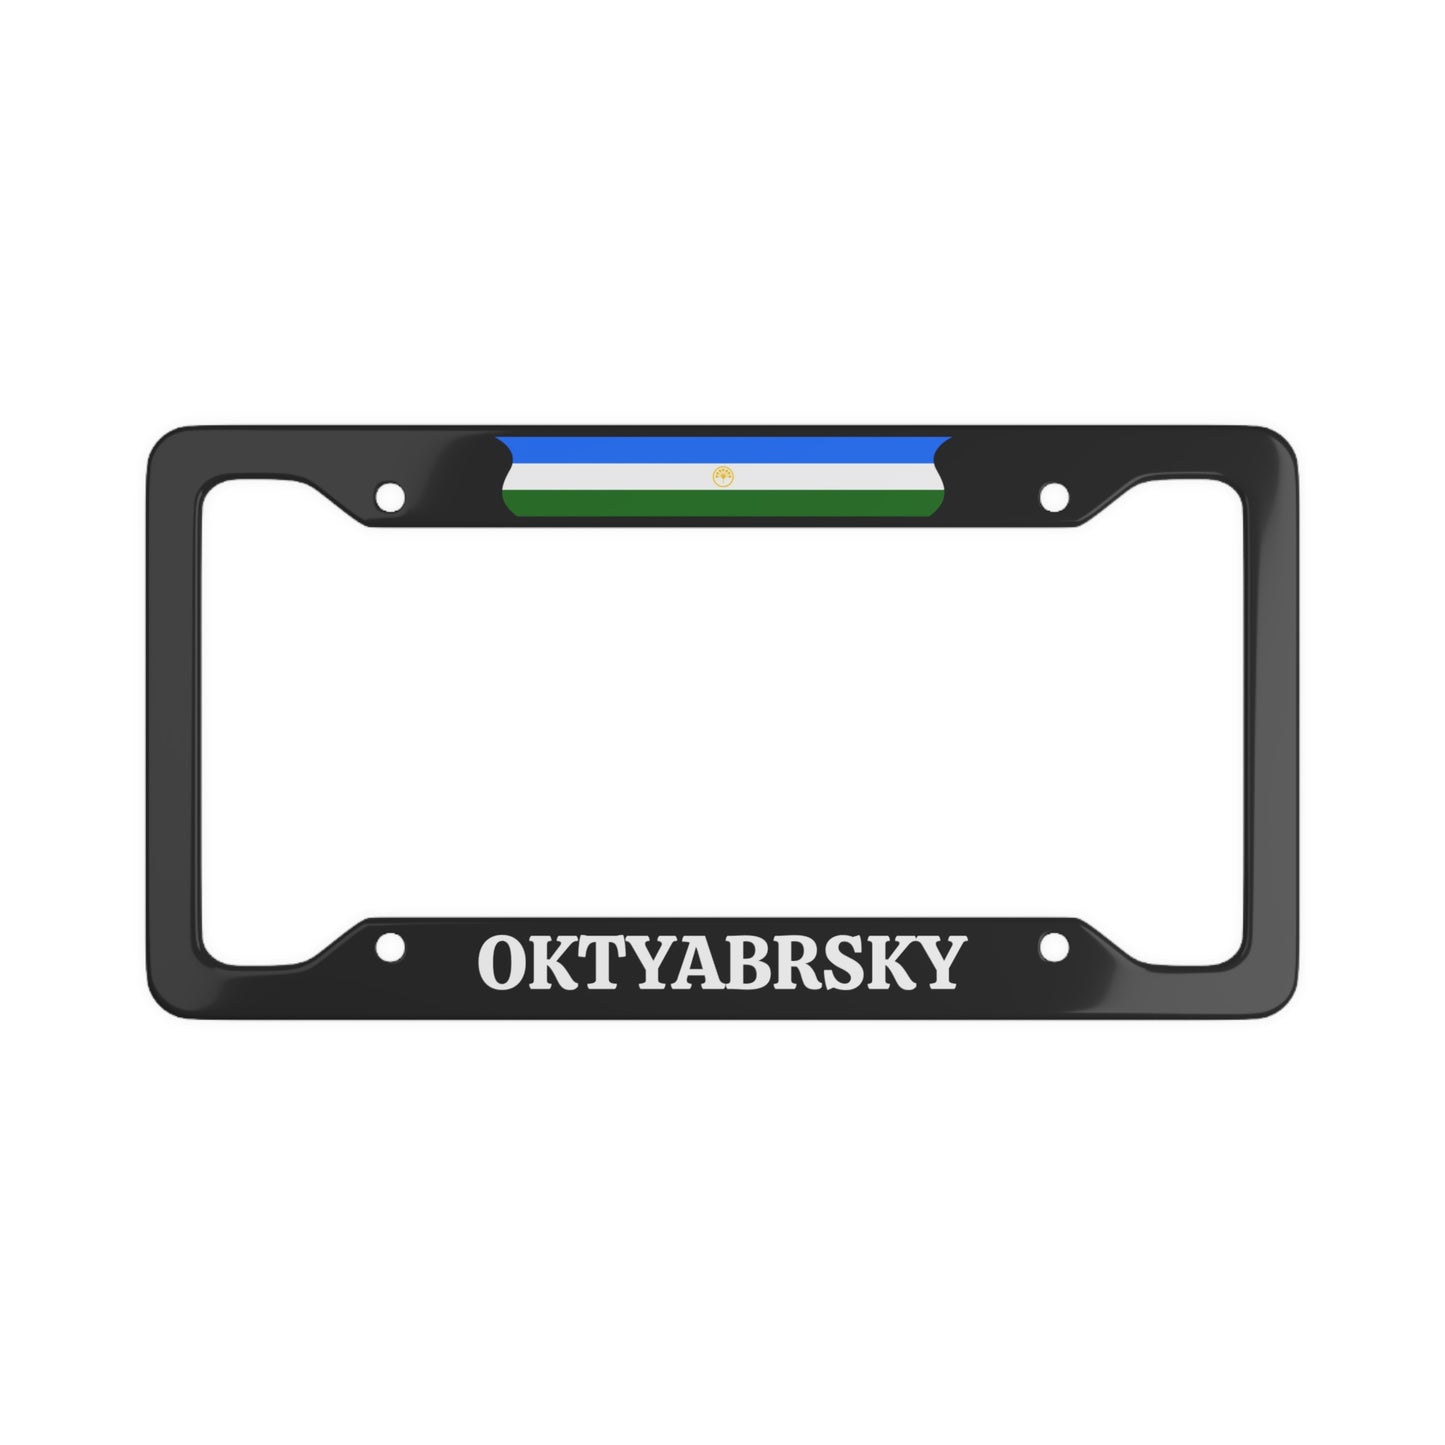 Oktyabrsky Bashkiria License Plate Frame